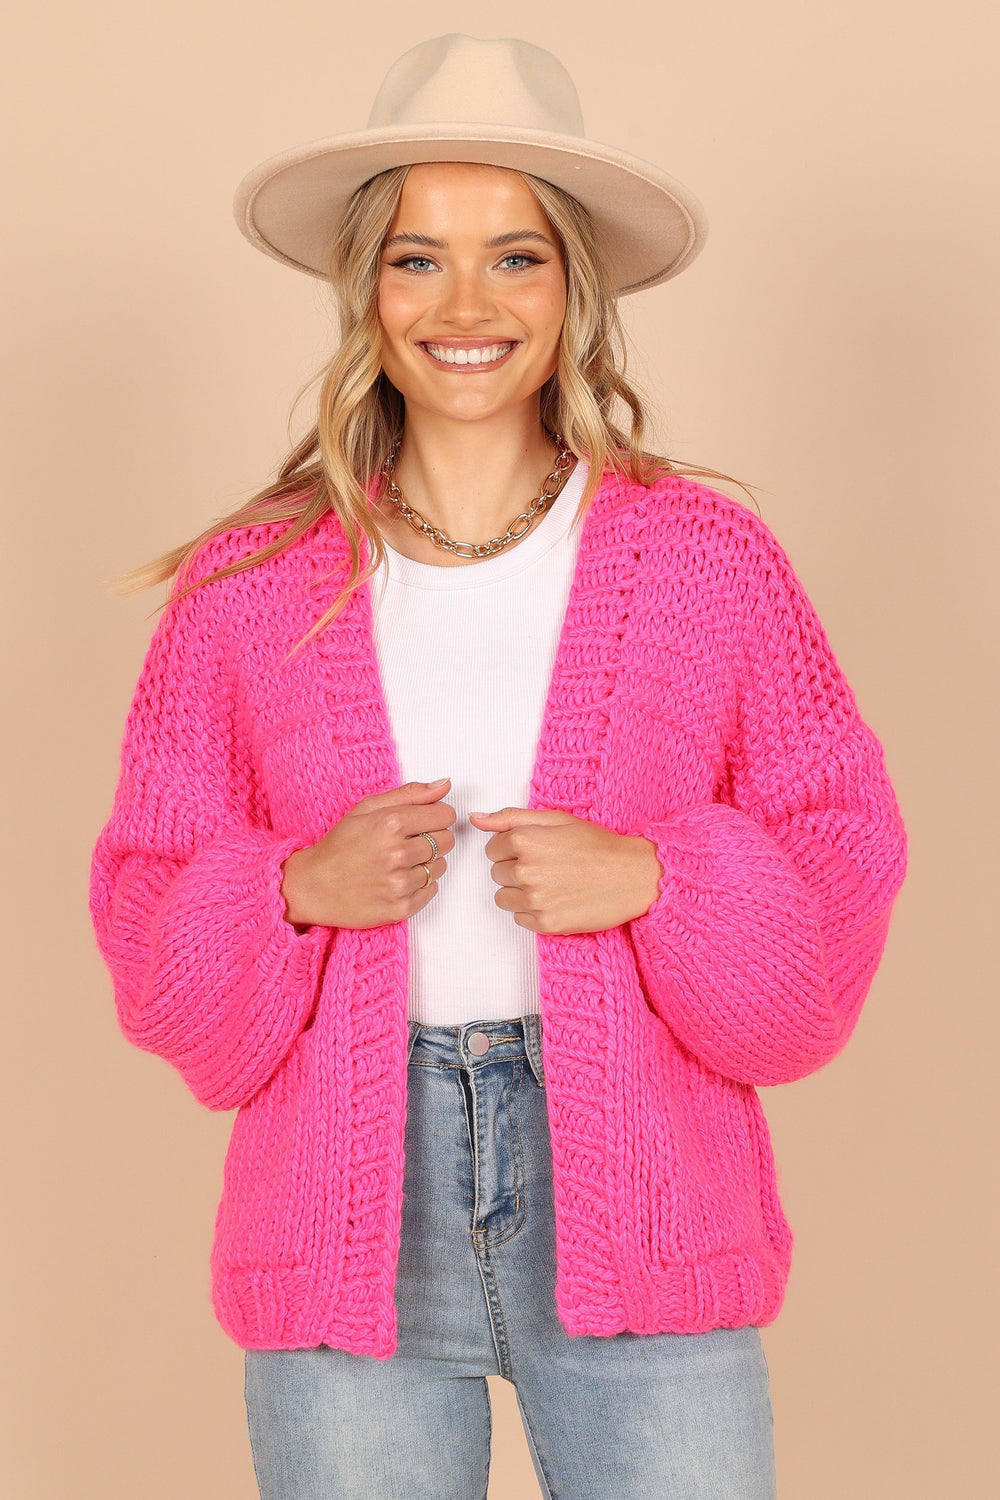 Cara Oversized Handknit Knit Sweater - Hot Pink - Petal & Pup USA